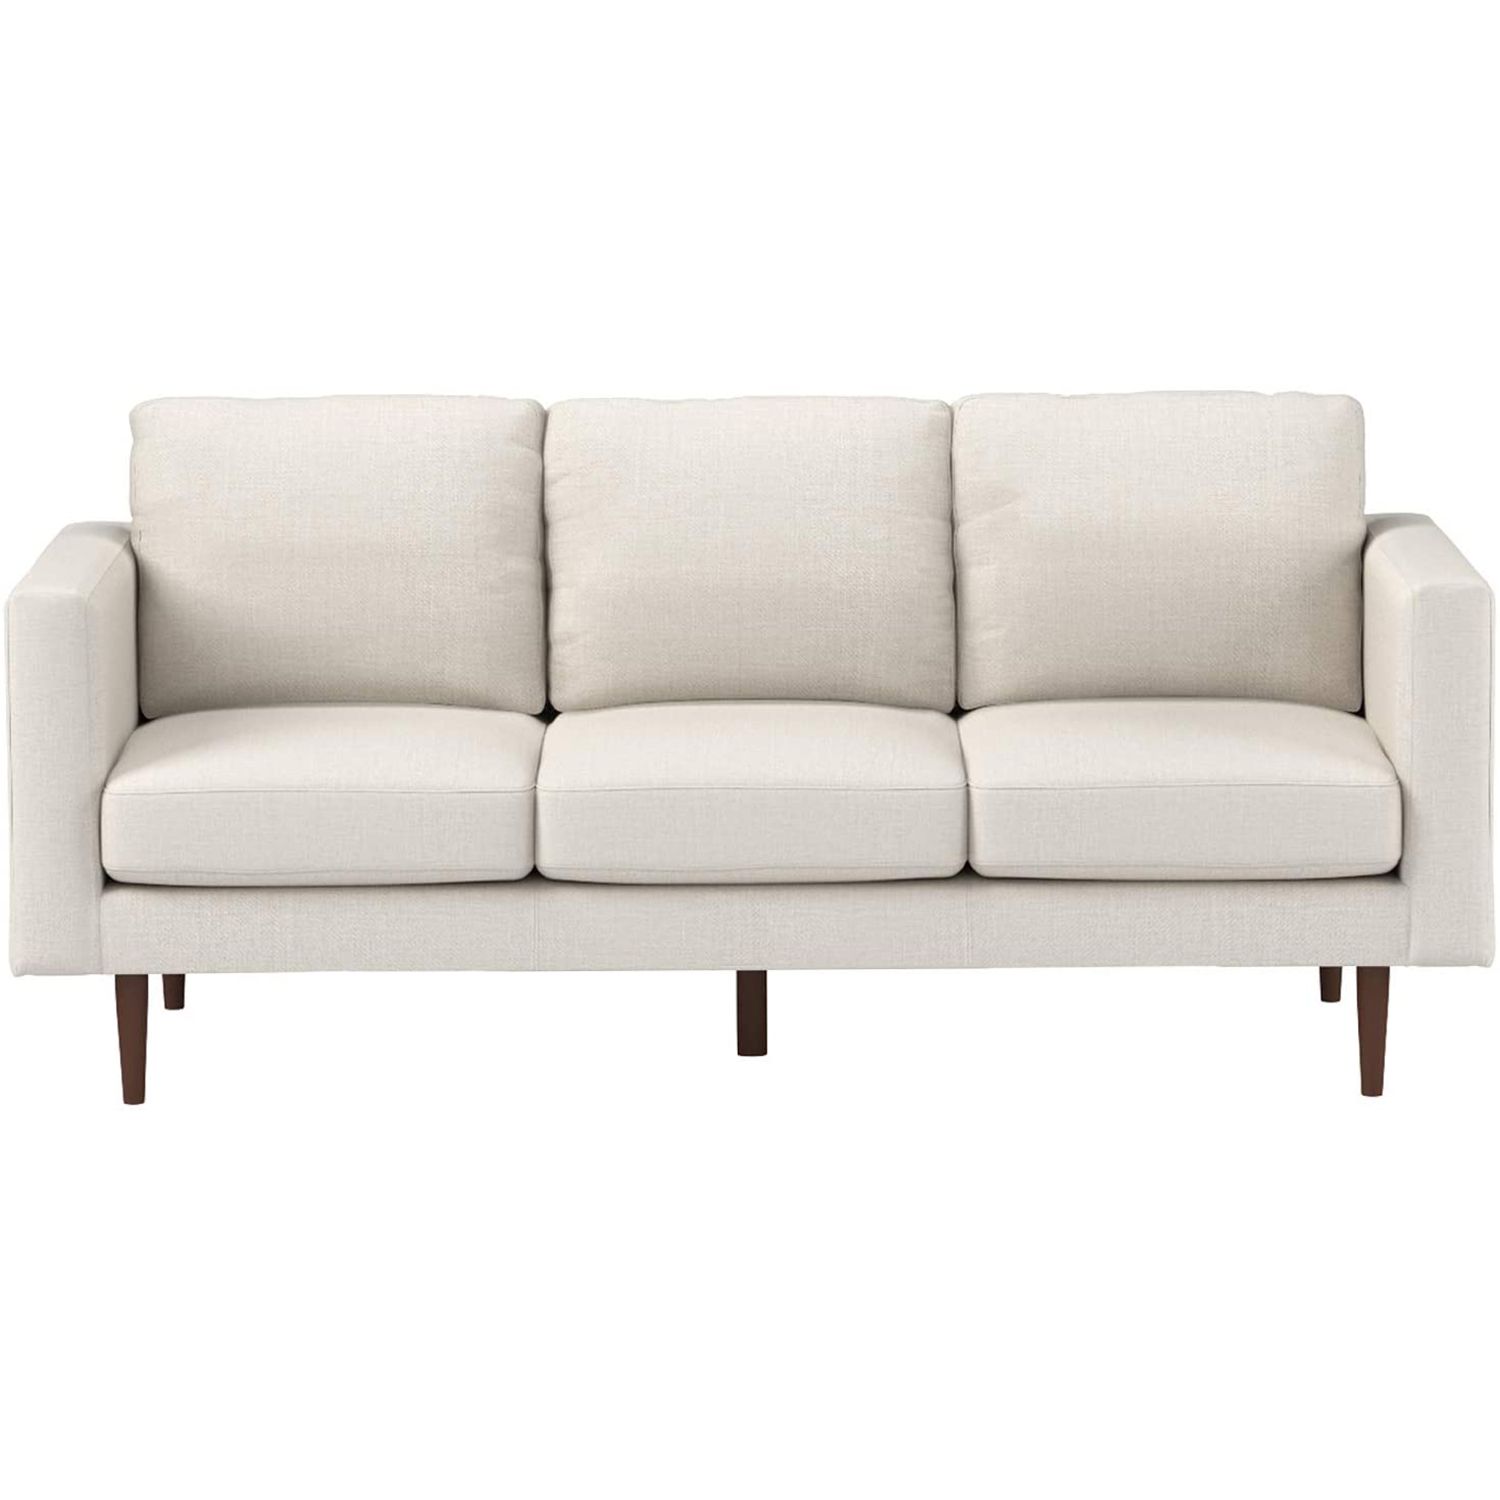 modern white sofas